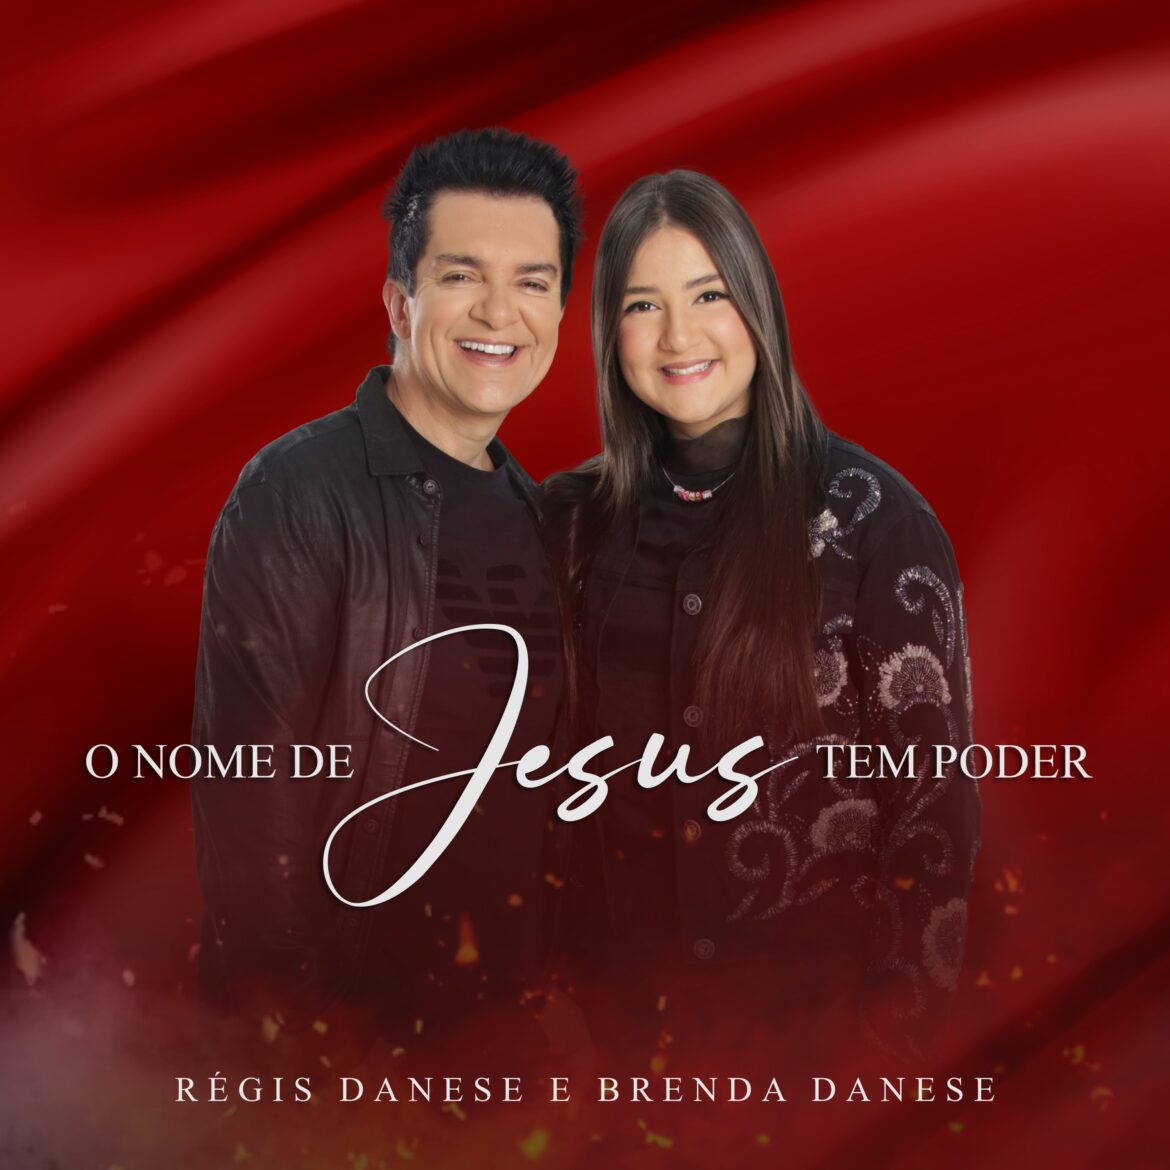 “O Nome de Jesus Tem Poder”, novo single de Regis Danese e Brenda Danese, declara que tudo é possível ao que crê